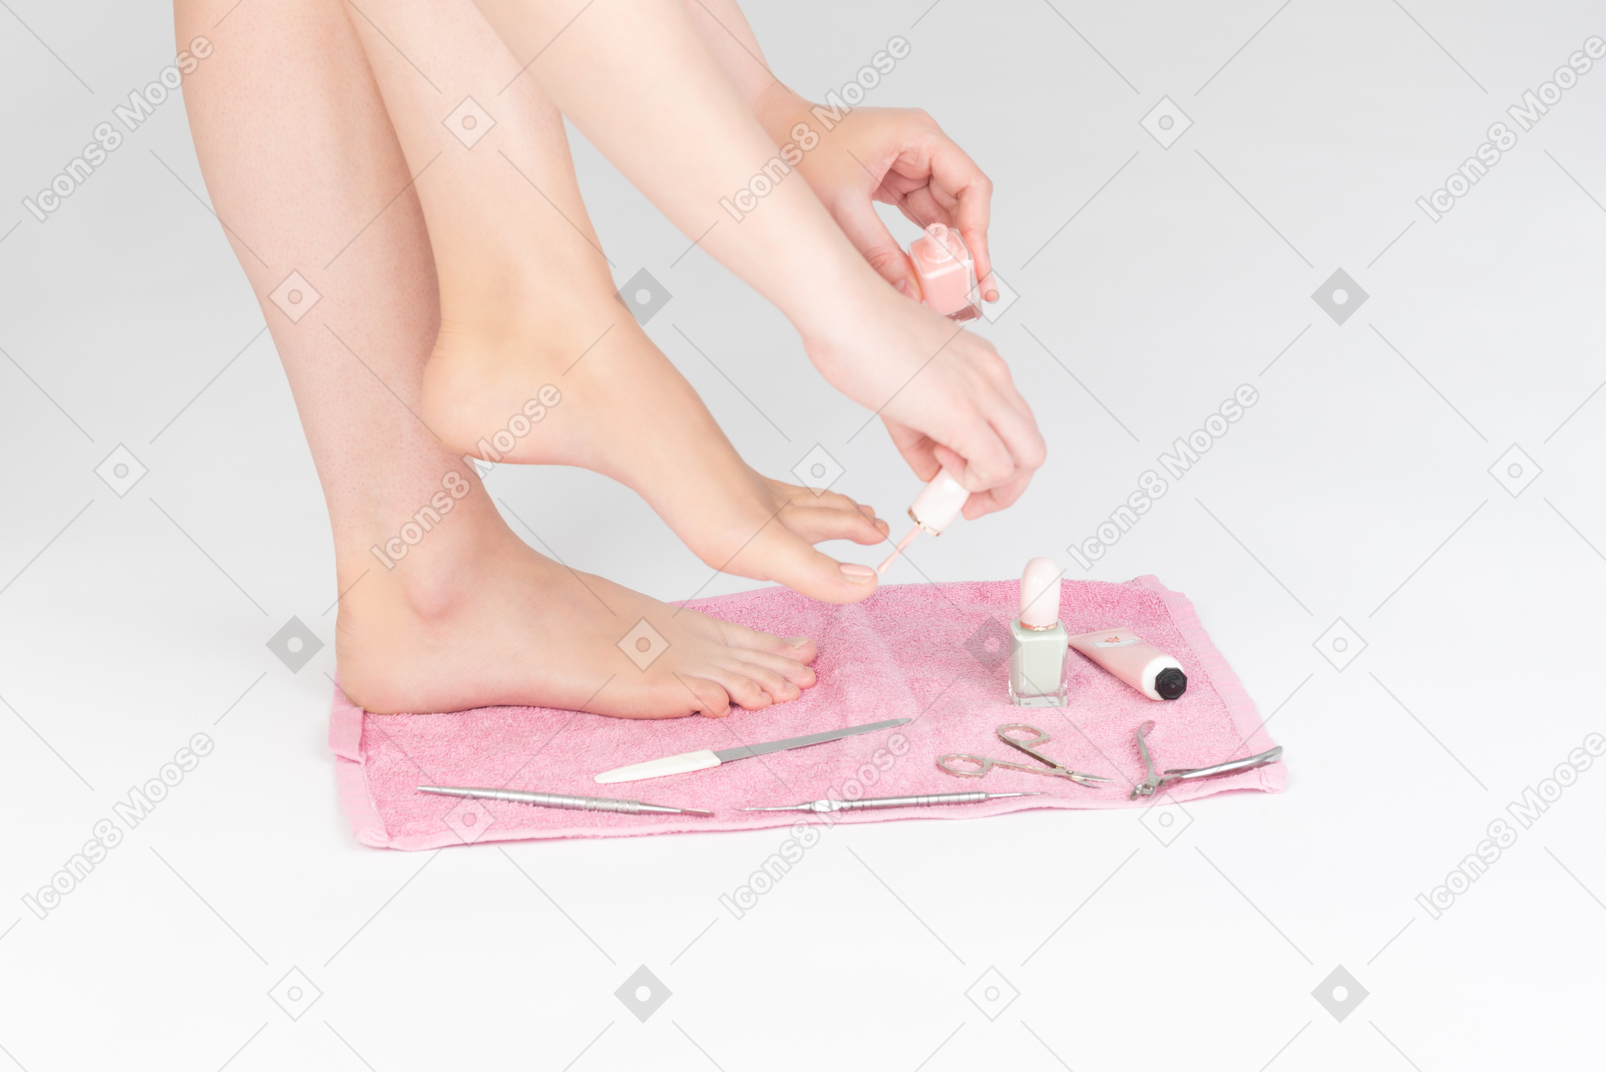 女性の足とそれの近くのマニキュアツールのショット